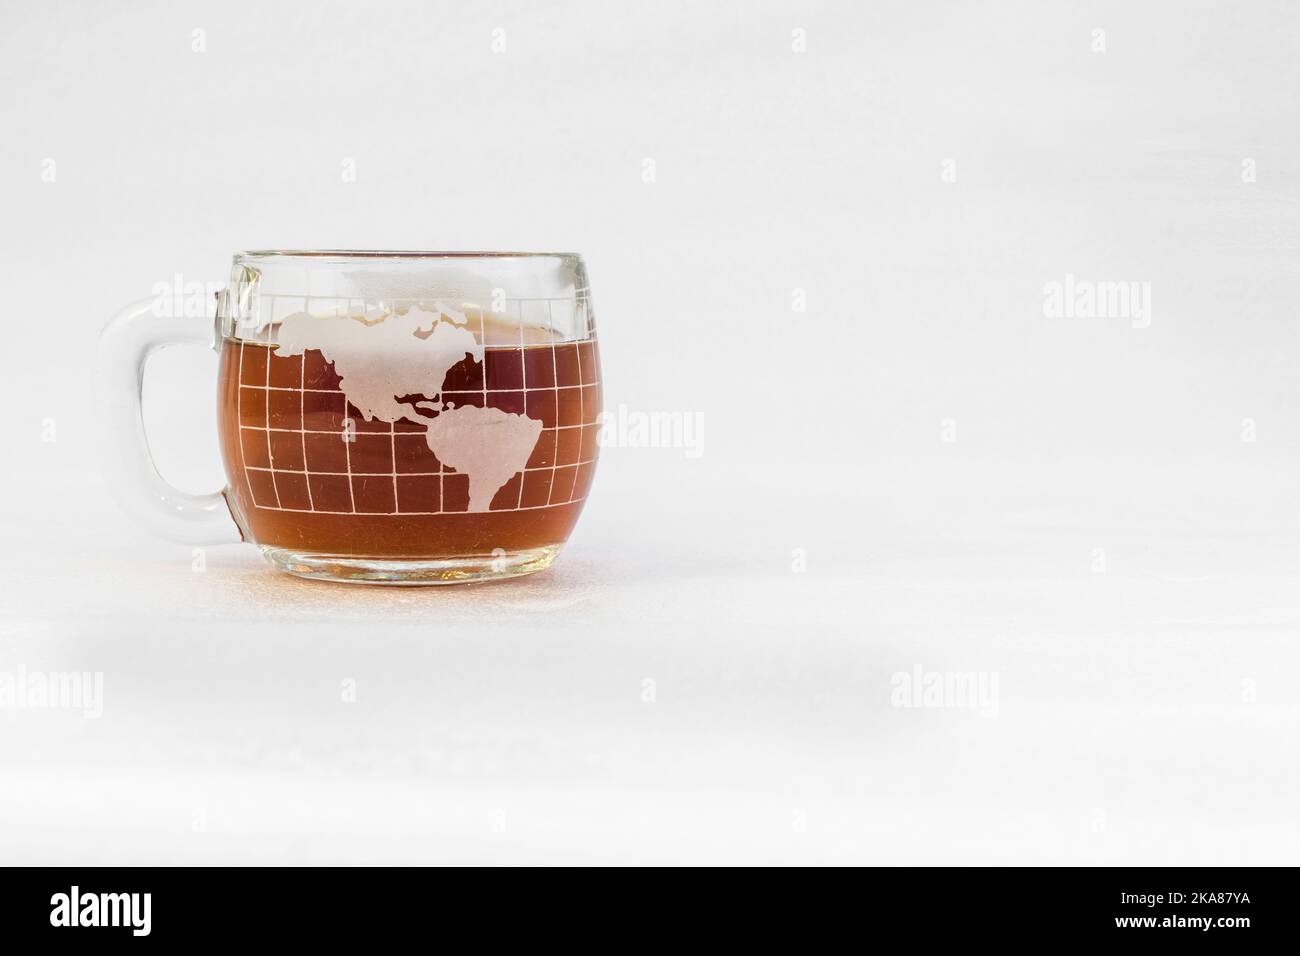 Kaffeebecher aus klarem Glas in Form einer Kugel, gefüllt mit Kaffee auf weißem Hintergrund Stockfoto